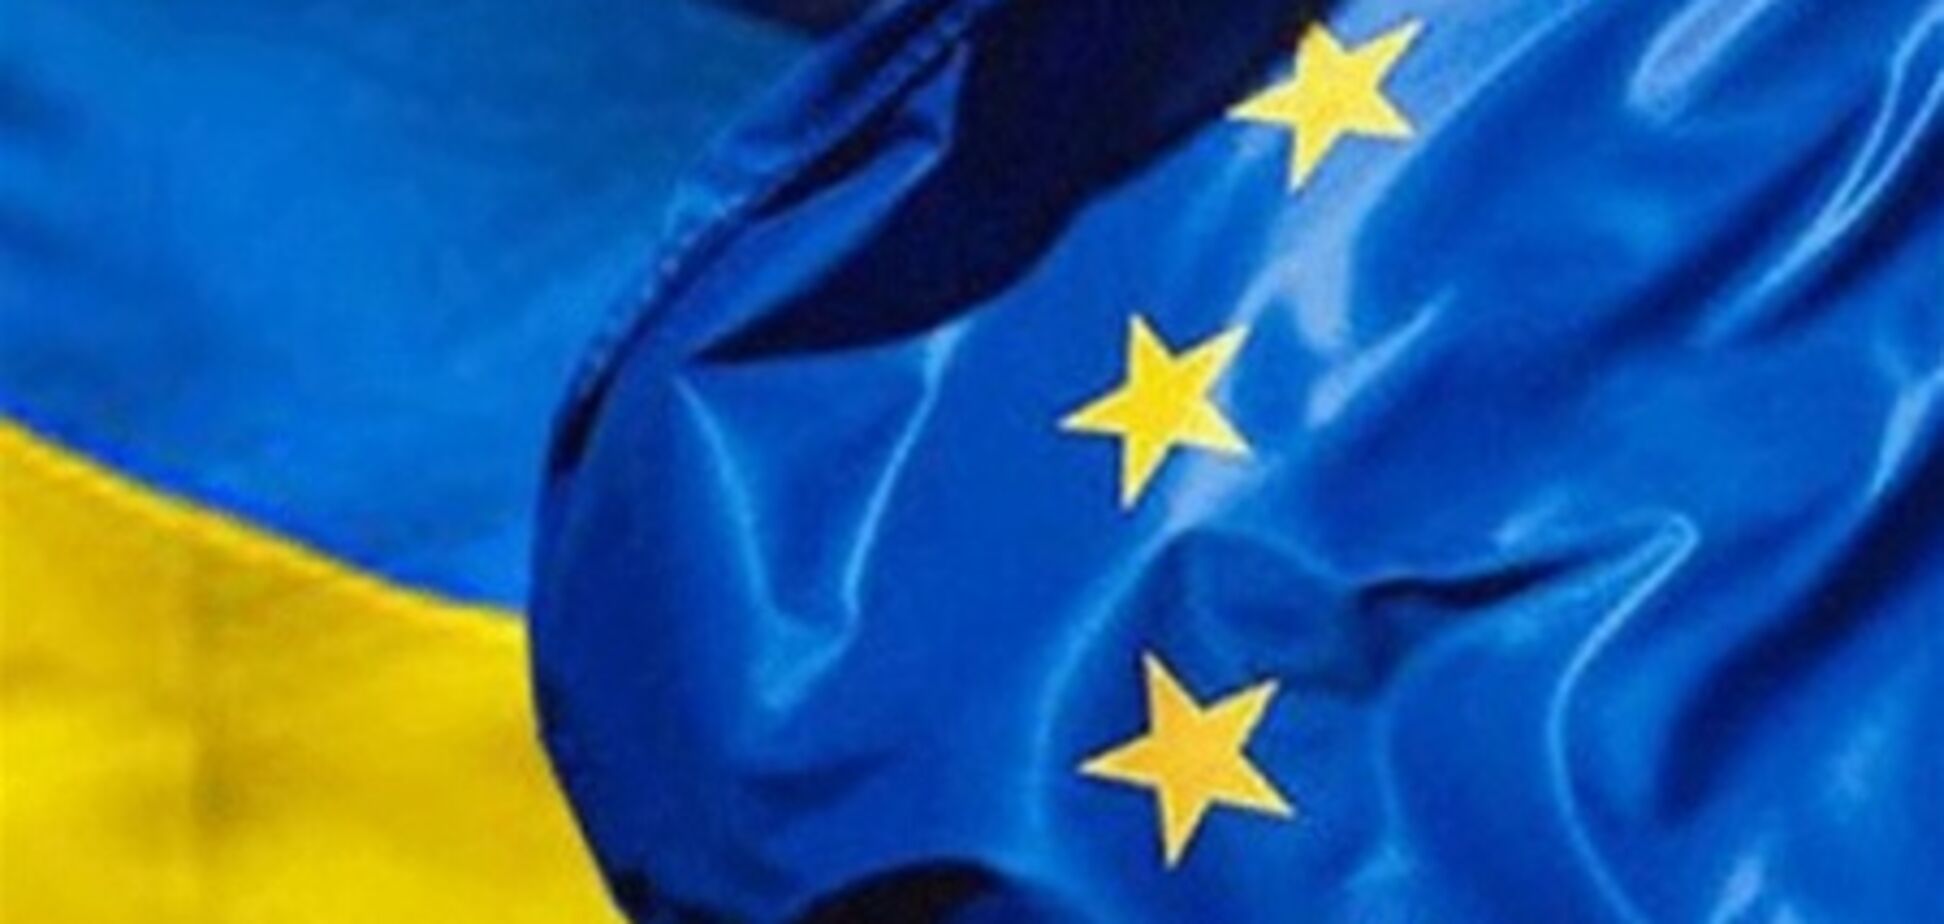 'Українська влада продемонструвала байдужість до позиції Європи' - експерт